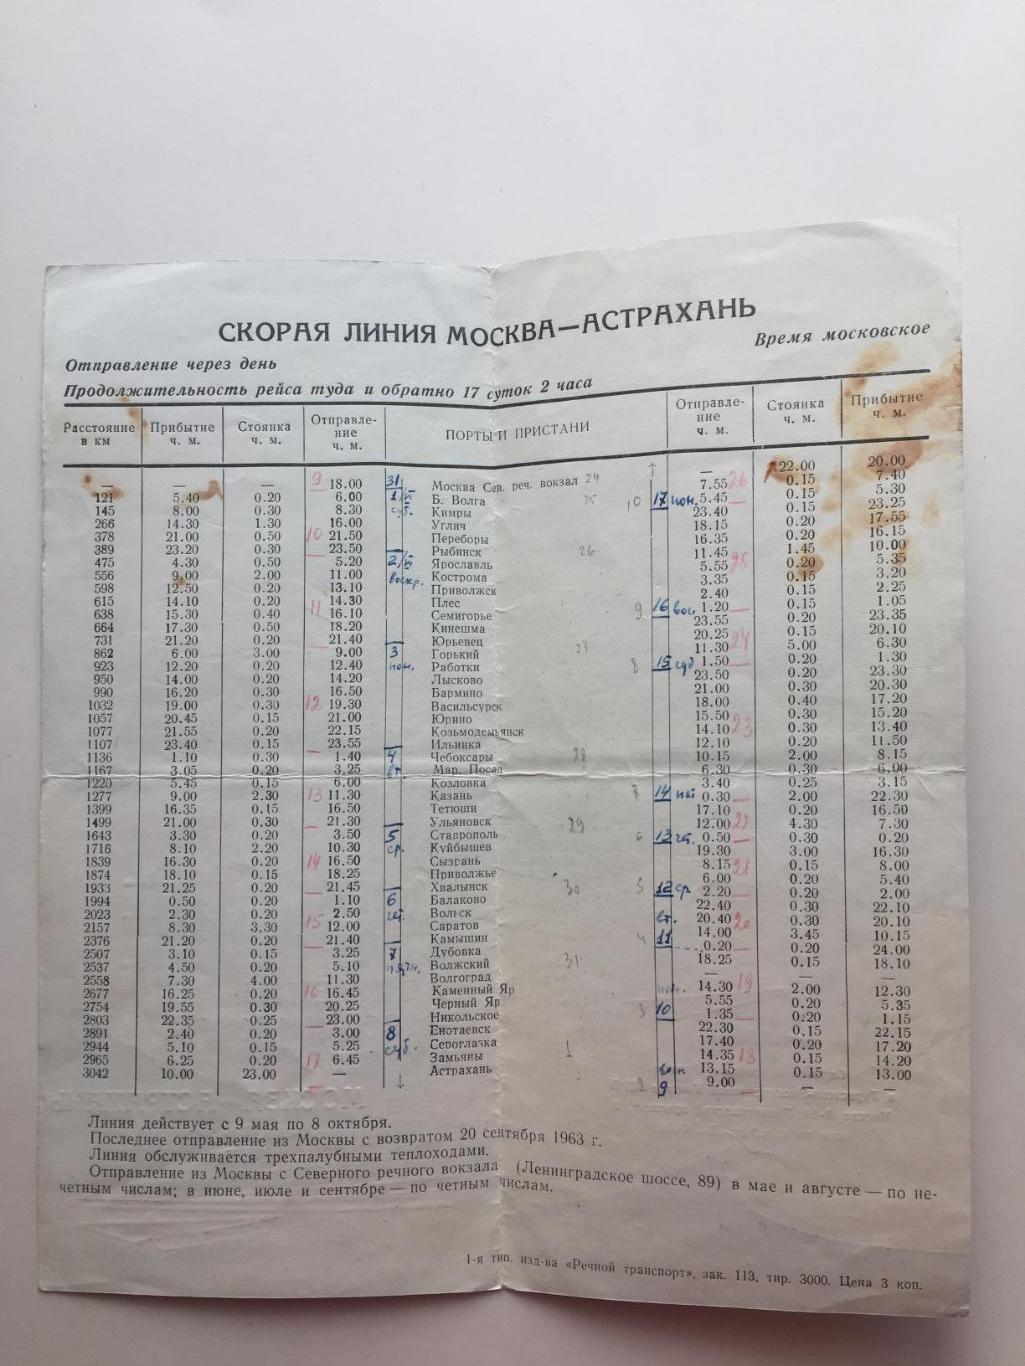 Расписание движения пассажирских судов Москва-Астрахань 1963 г. 1